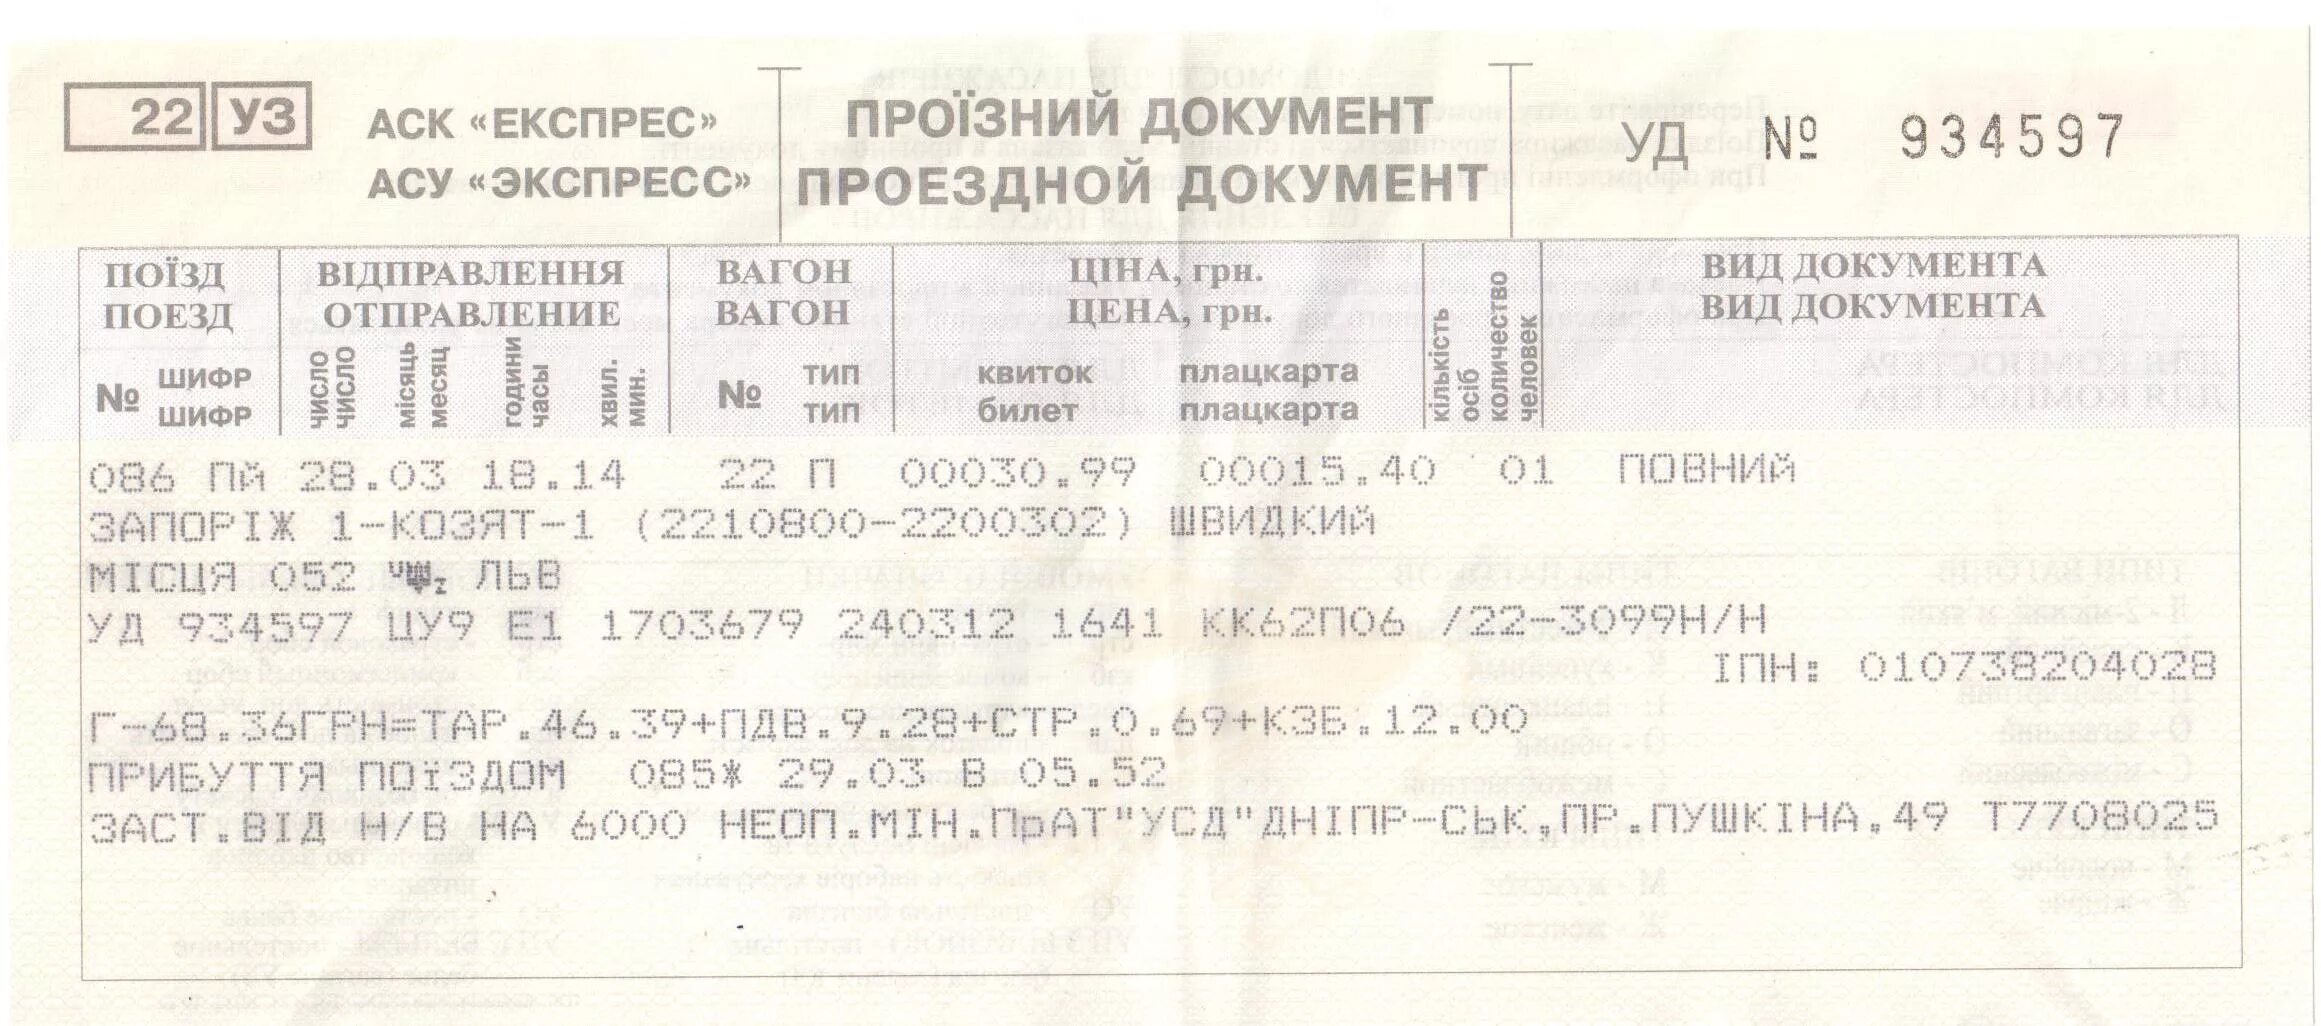 Купить жд билеты без регистрации. ЖД билеты. Билет на поезд. Билеты на поезд Украина. Дубликат железнодорожного билета.